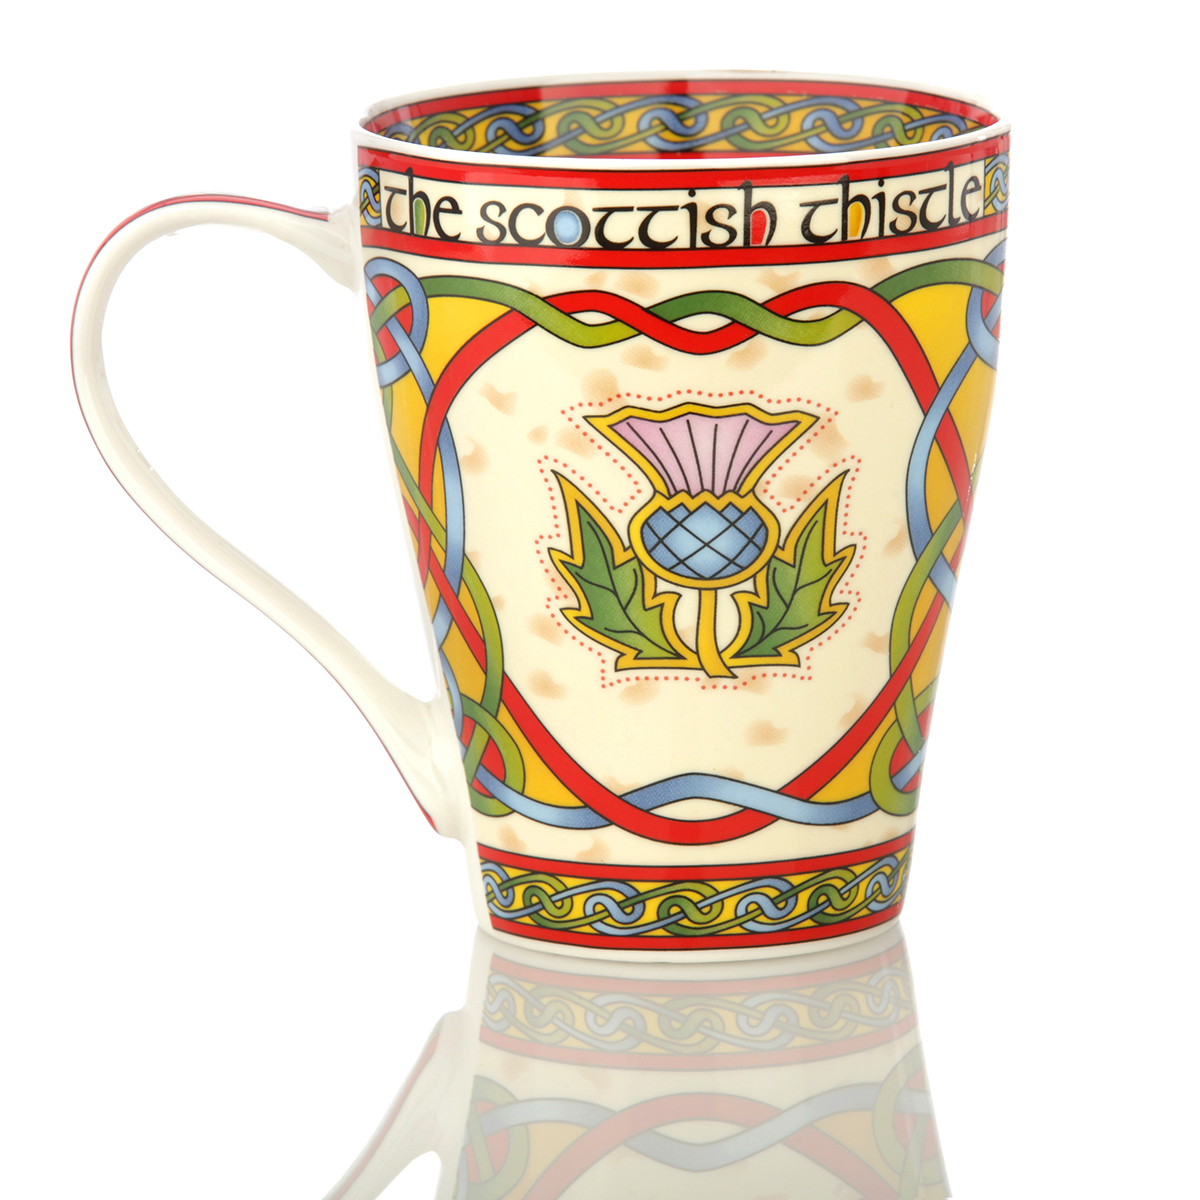 The Scottish Thistle Mug  - Kaffeebecher mit schottischer Distel & Keltischen Mustern